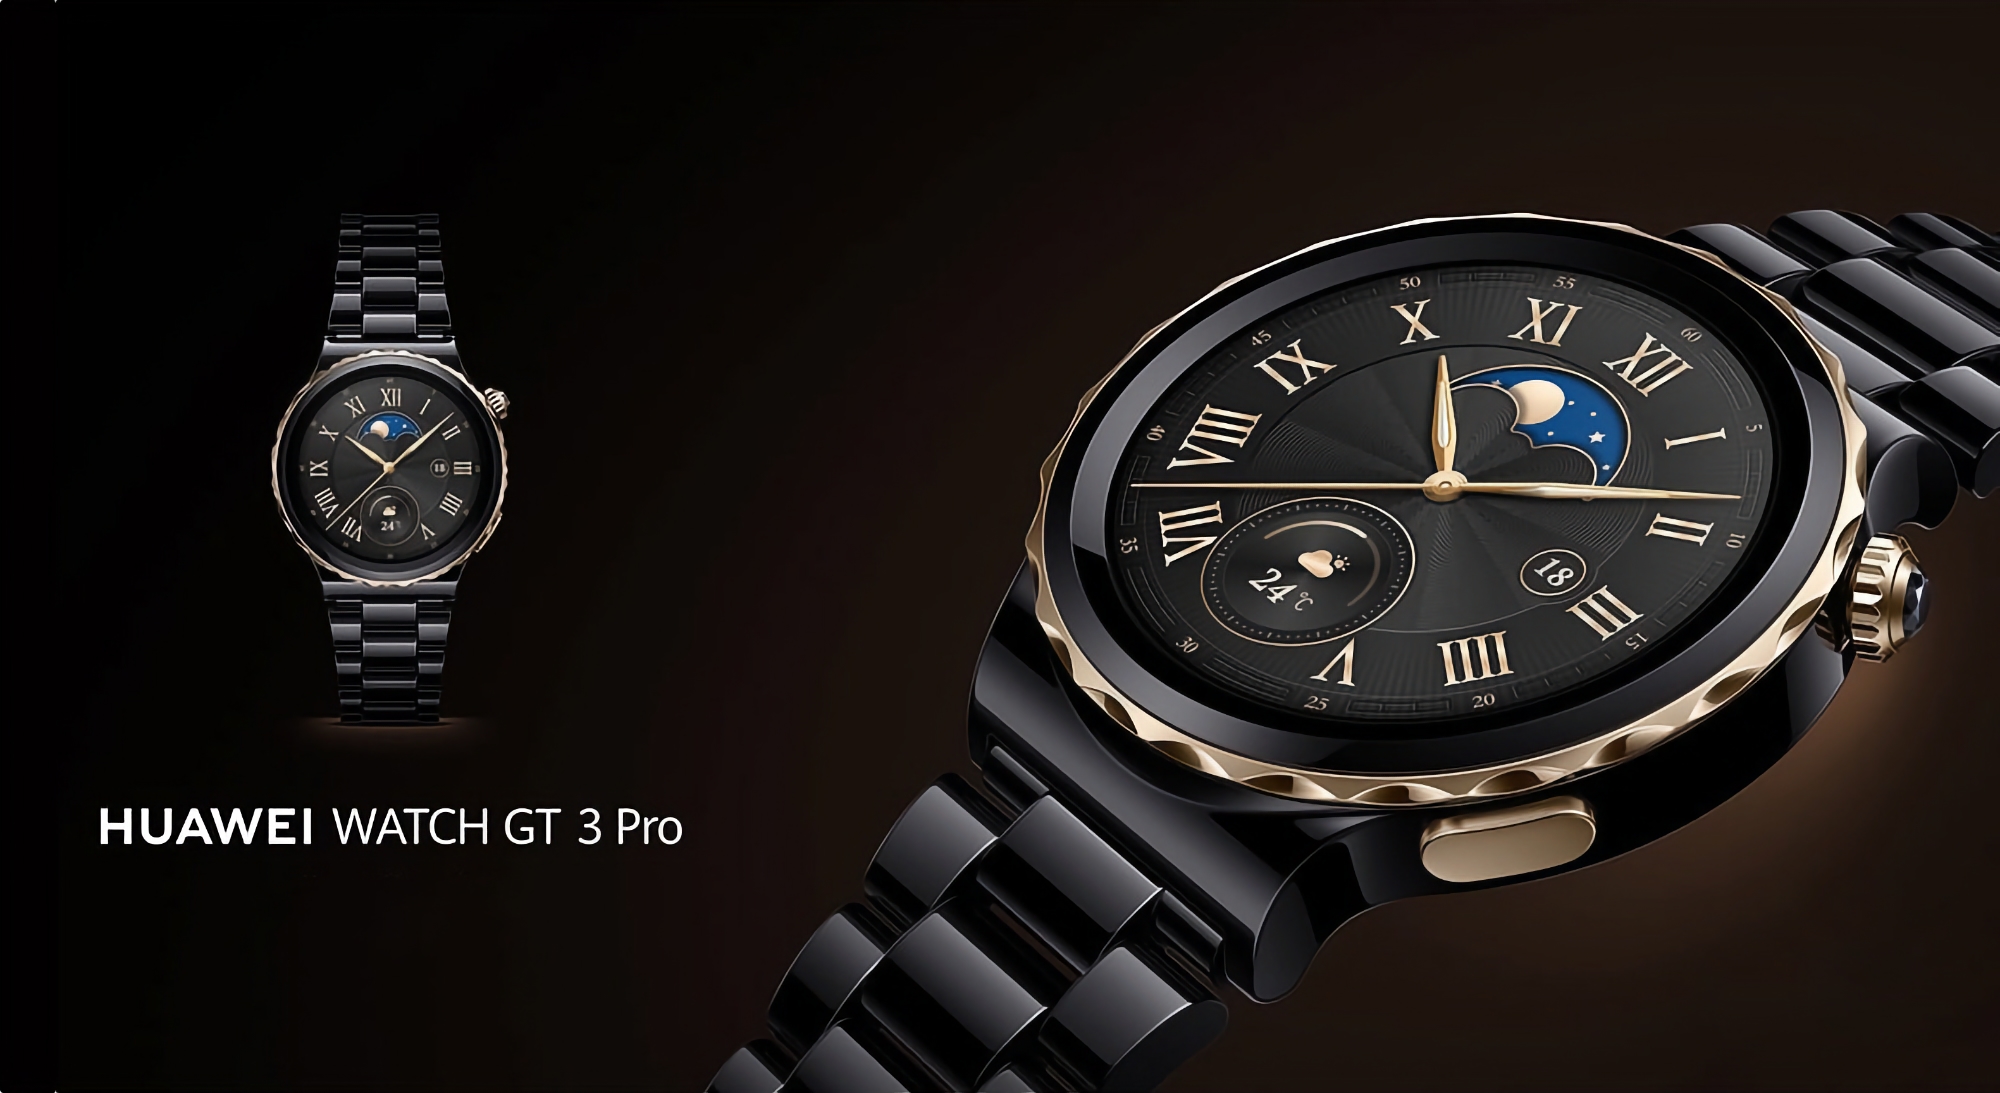 Huawei Watch GT 3 Pro ha ricevuto l'aggiornamento 3.0.0.101: quali sono le novità?